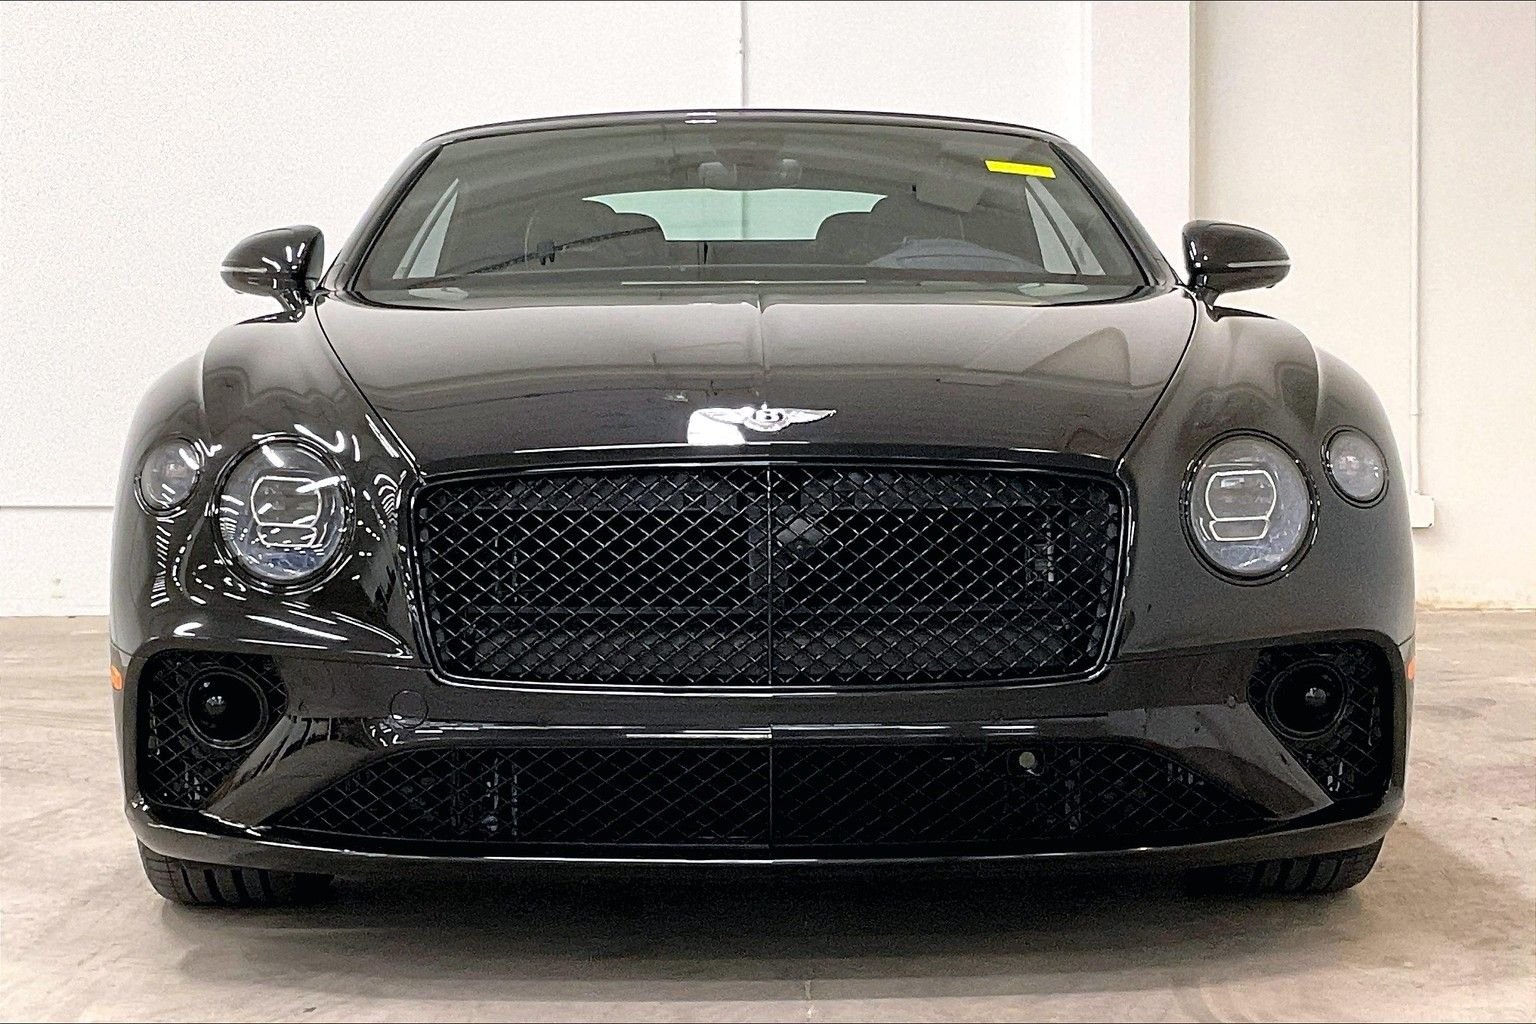 Sold Inventory | Bentley San Francisco